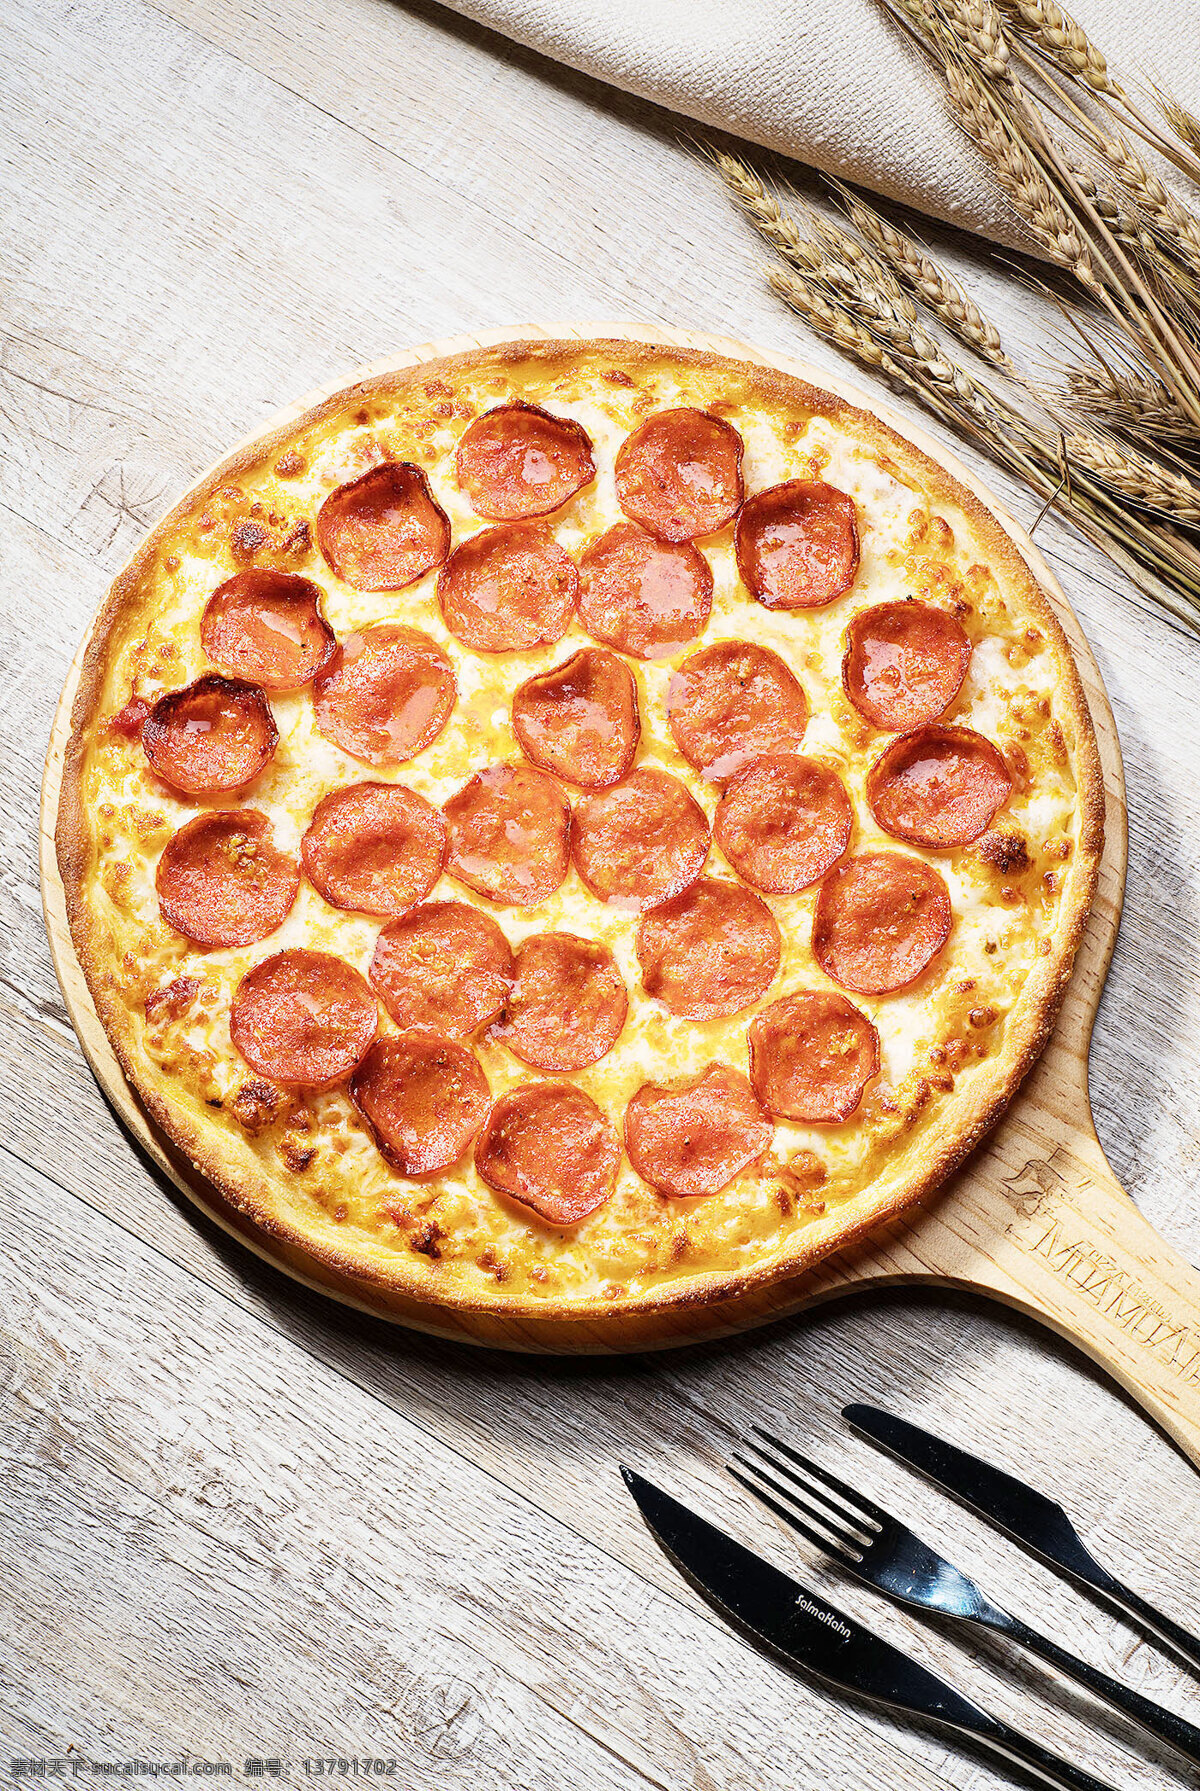 美式精选披萨 水果比萨 鲜果比萨 至尊比萨 至尊披萨 pizza 夏威夷披萨 夏威夷 乳酪披萨 香肠比萨 素材背景 菜单菜谱